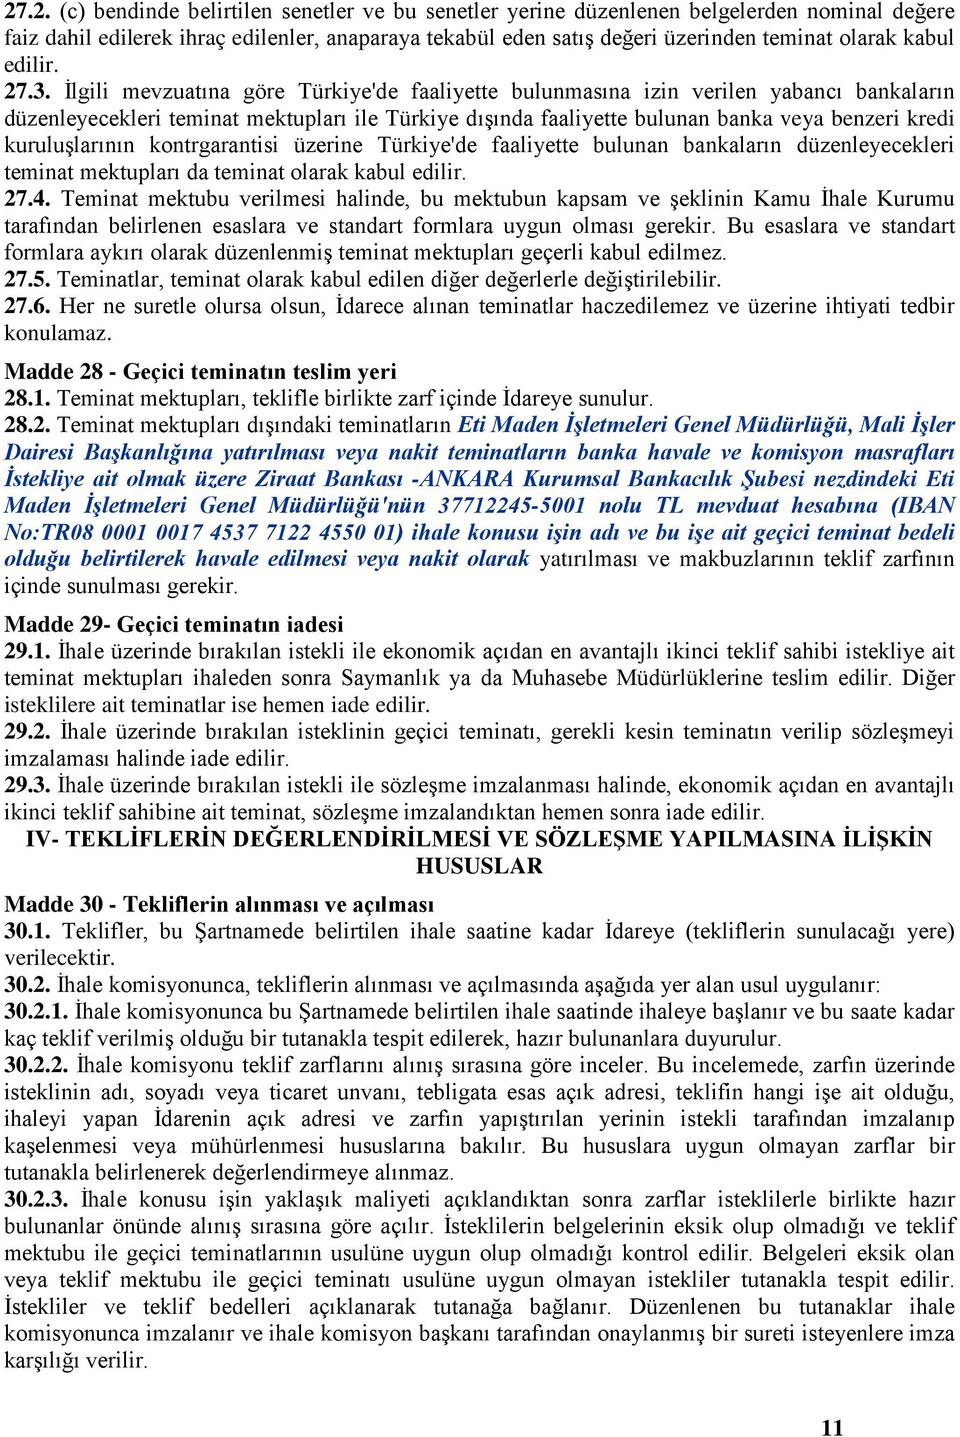 İlgili mevzuatına göre Türkiye'de faaliyette bulunmasına izin verilen yabancı bankaların düzenleyecekleri teminat mektupları ile Türkiye dışında faaliyette bulunan banka veya benzeri kredi